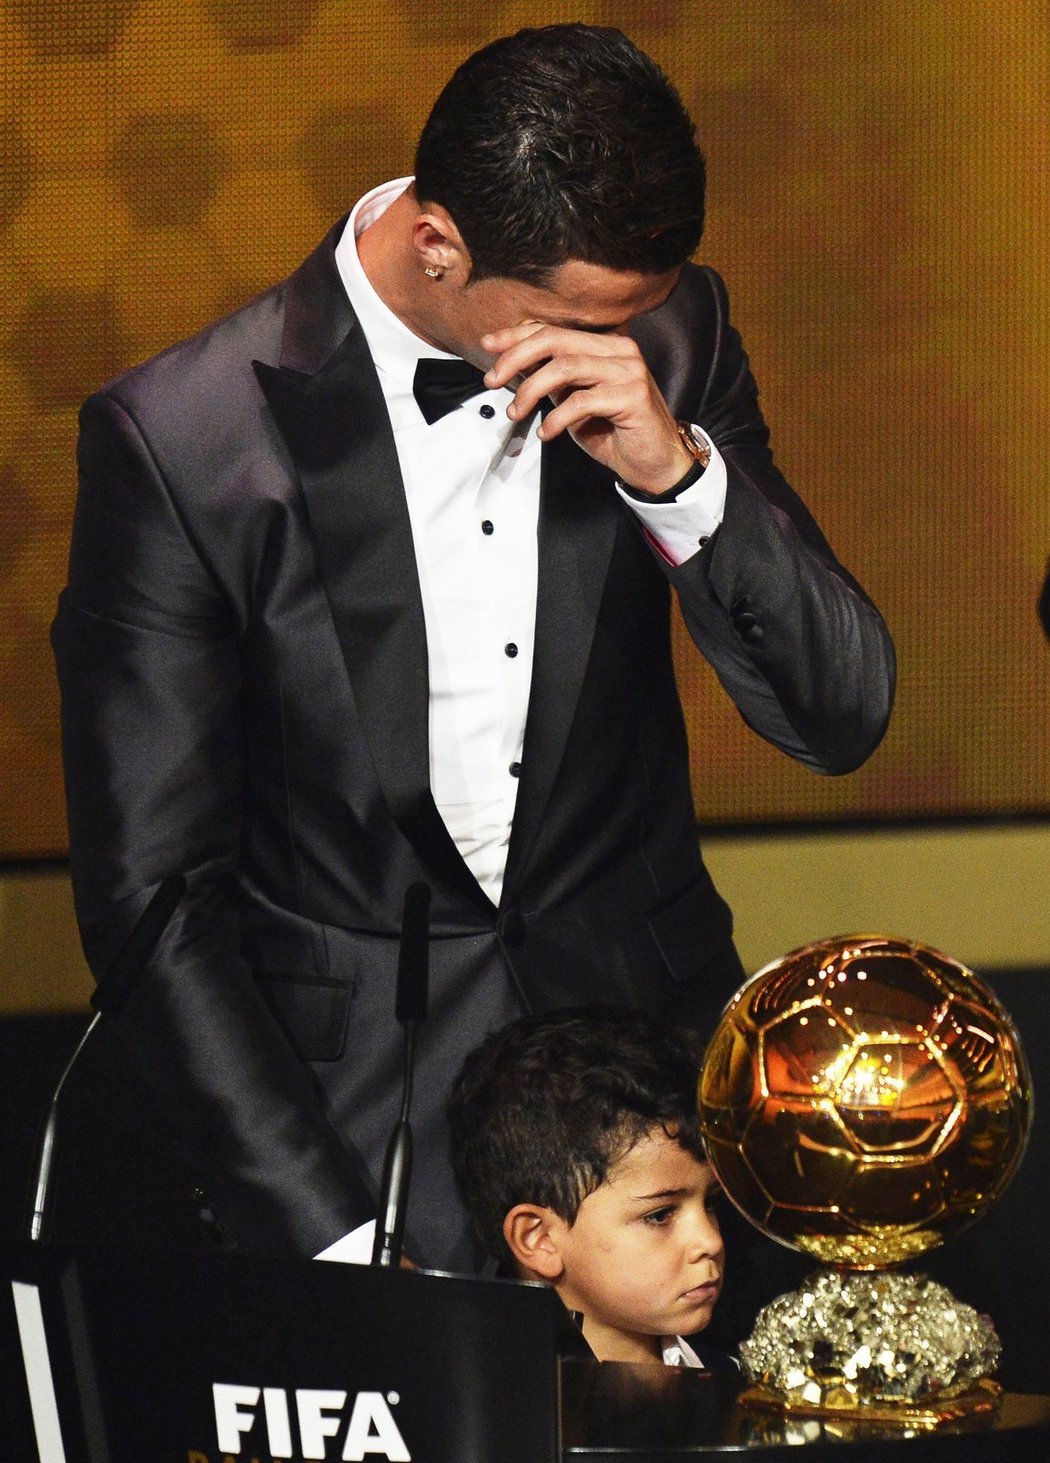 Dojatý Cristiano Ronaldo dostal nejprestižnější fotbalové ocenění: Zlatý míč pro nejlepšího hráče planety. Dočkal se po pěti letech, ve kterých anketzě vládl jeho velký konkurent z Barcelony Lionel Messi.